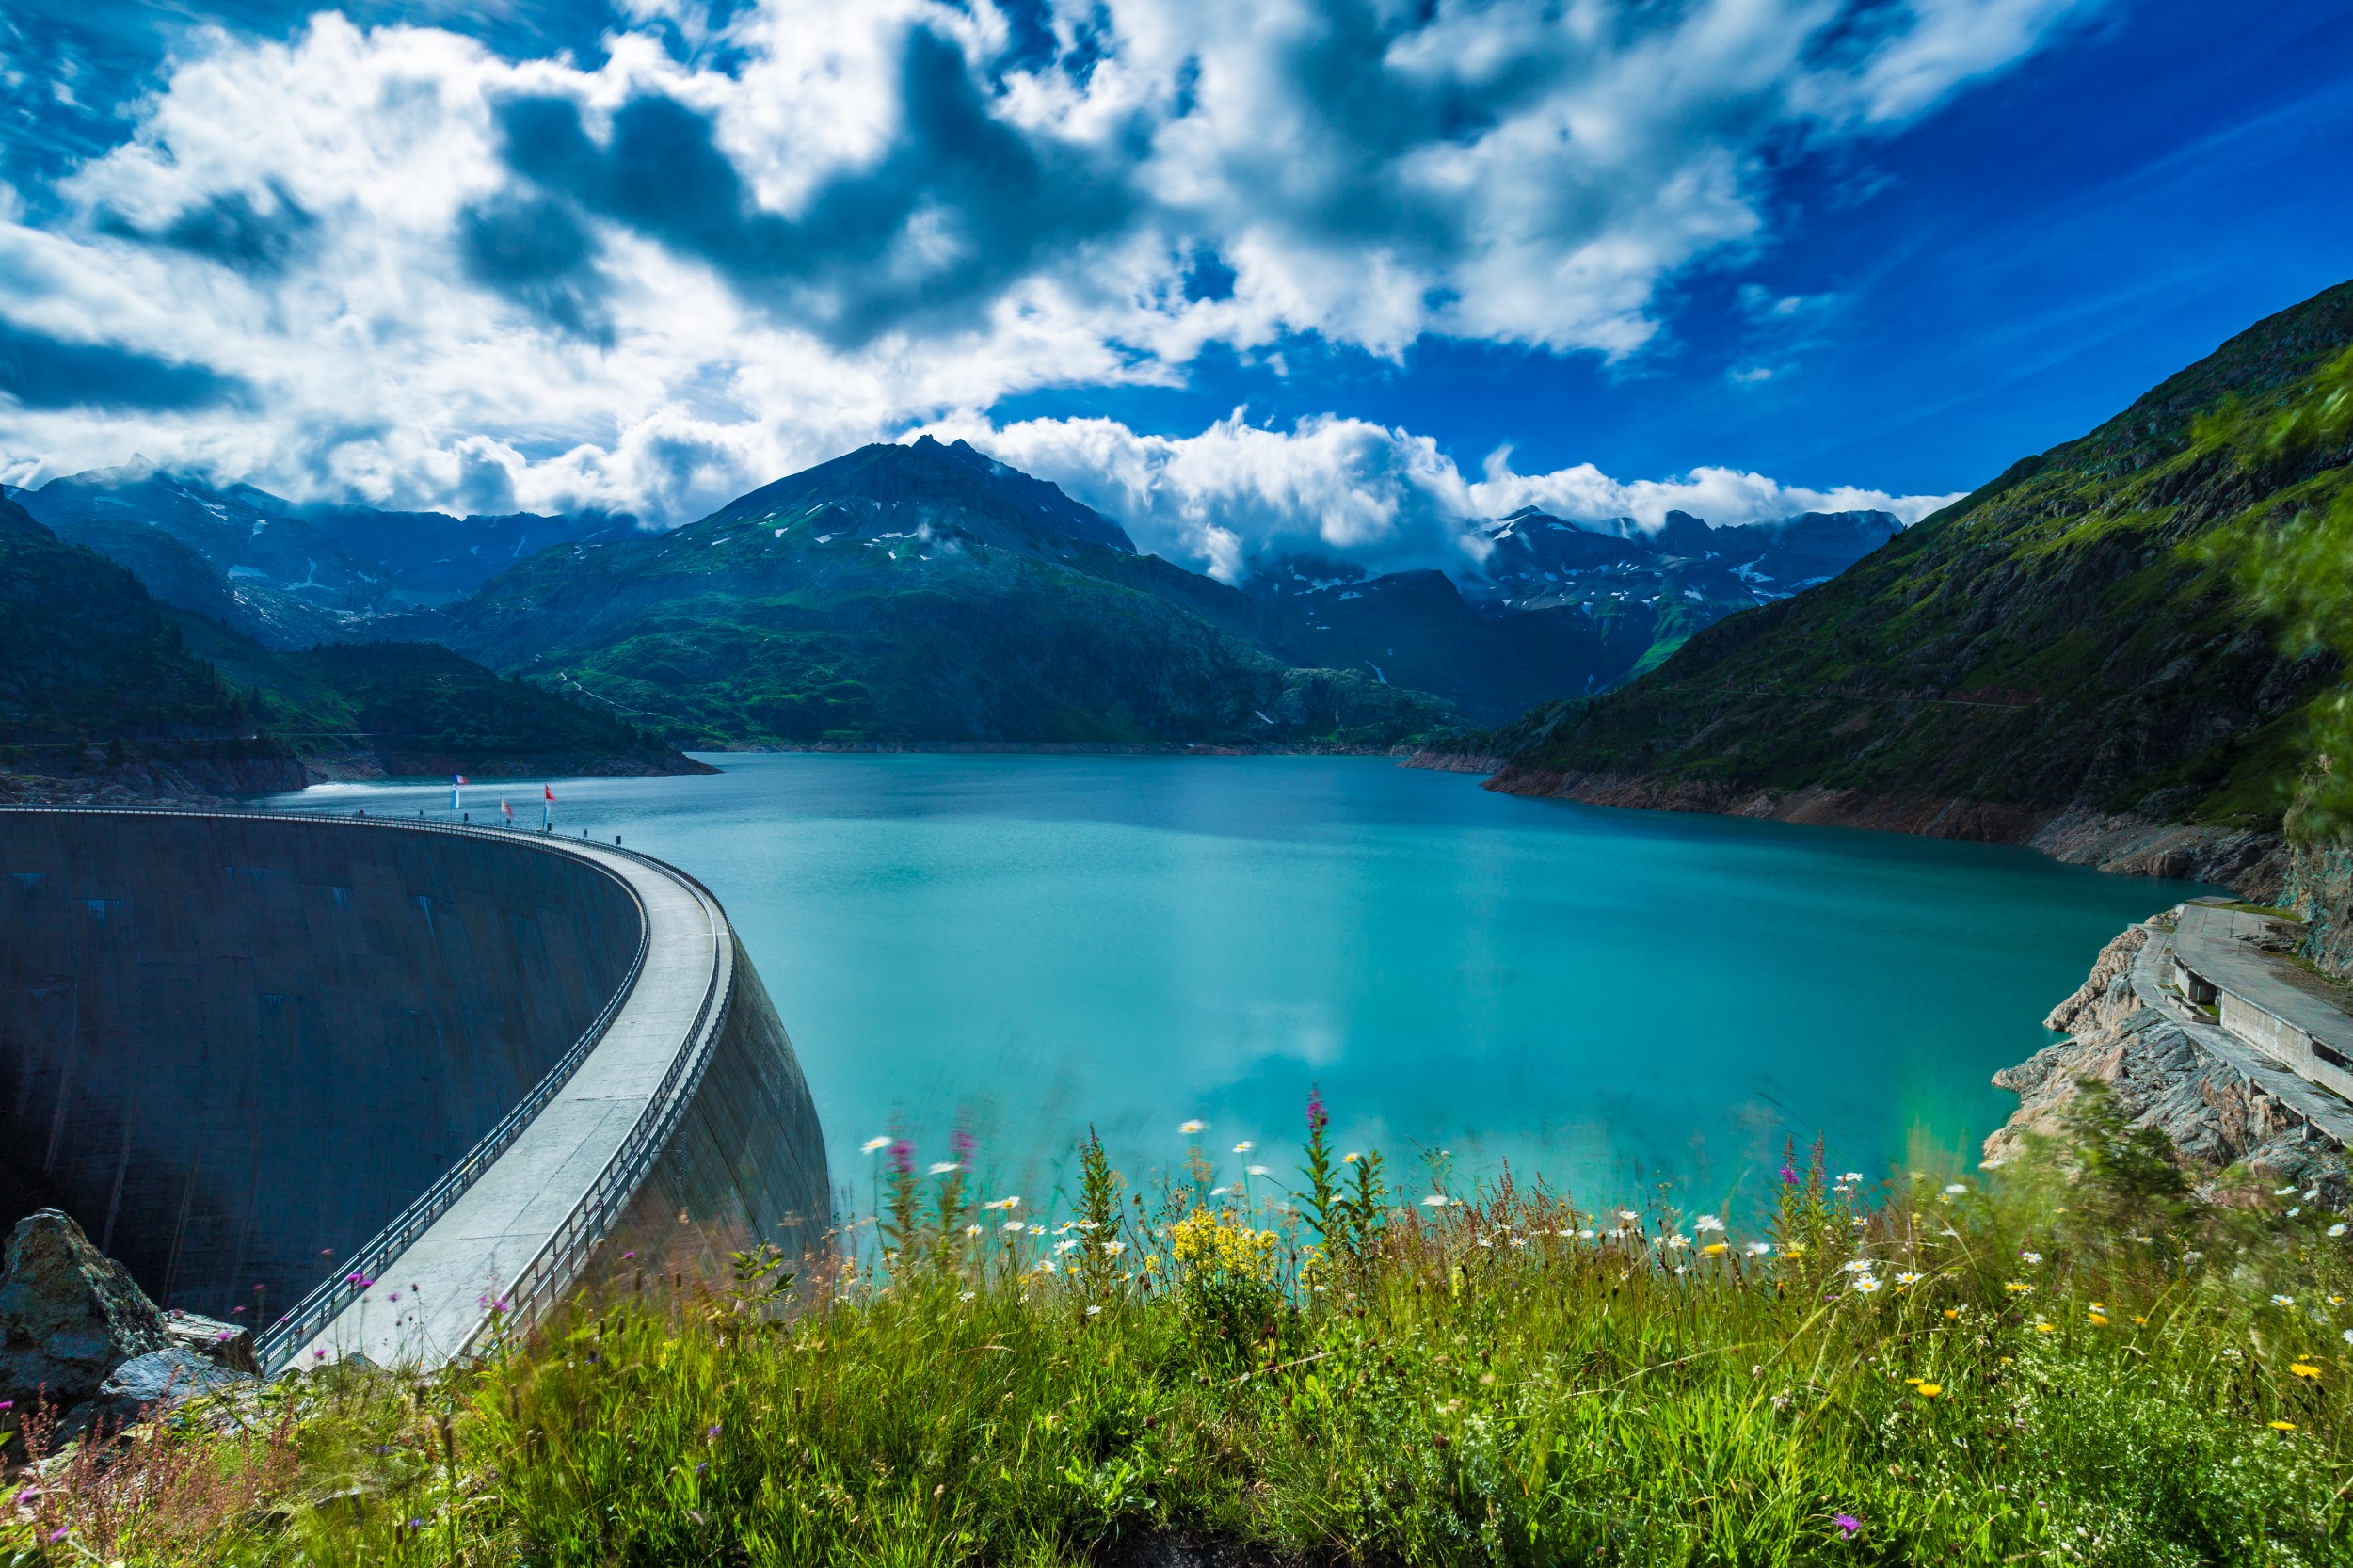 Un barrage dans un cadre idyllique : le lac d'Émosson dans les Alpes valaisannes.